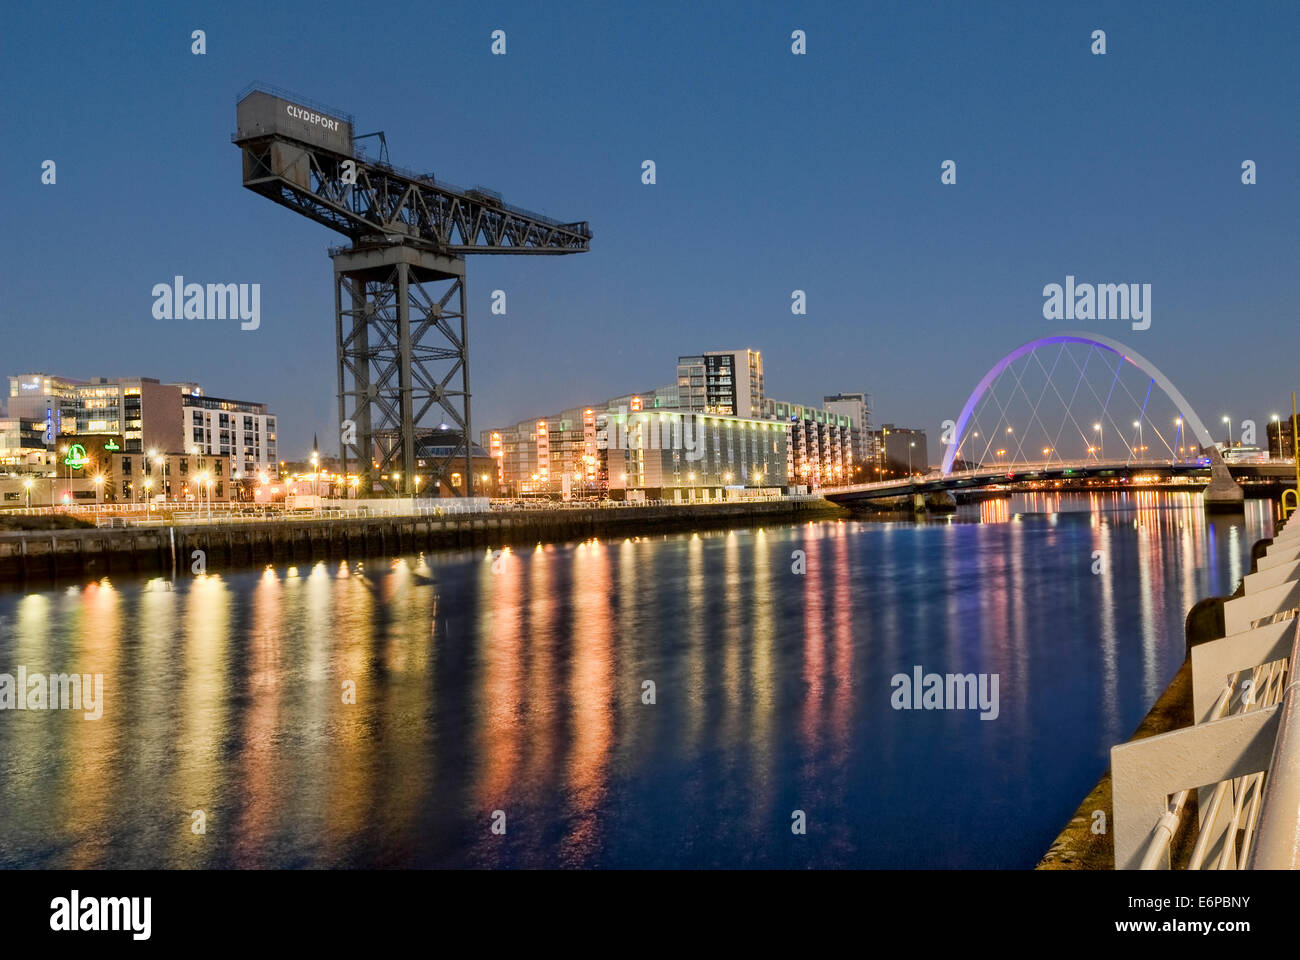 Immagine notturna di Glasgow e il fiume Clyde che mostra la Finnieston gru e la Clyde Arc Bridge. Foto Stock